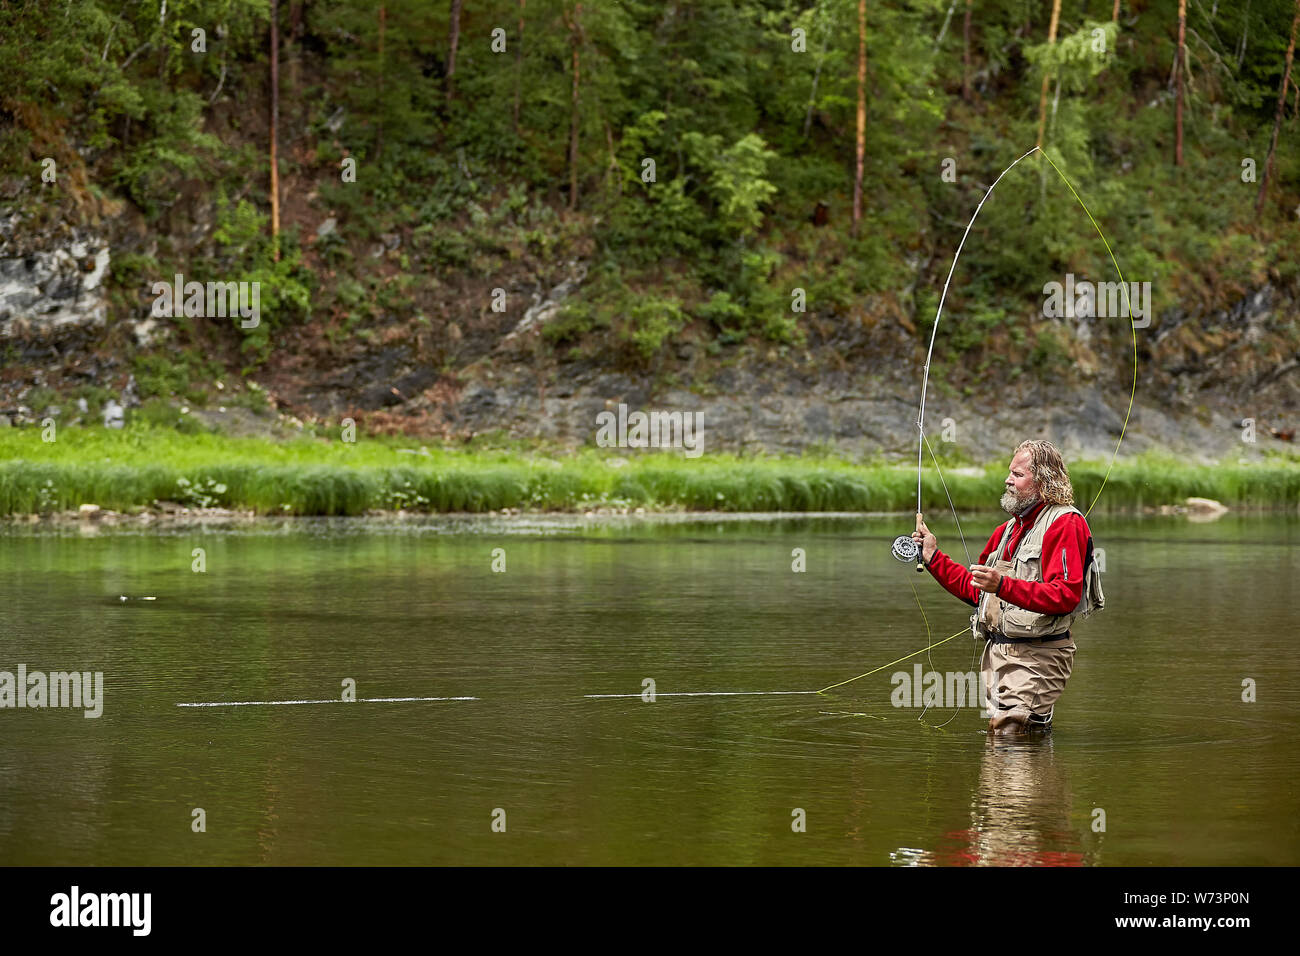 Reife bärtige Mann in Form von wasserdichter Kleidung im Stehen im Fluss im Wald beim Fliegenfischen, eco - Tourismus. Stockfoto